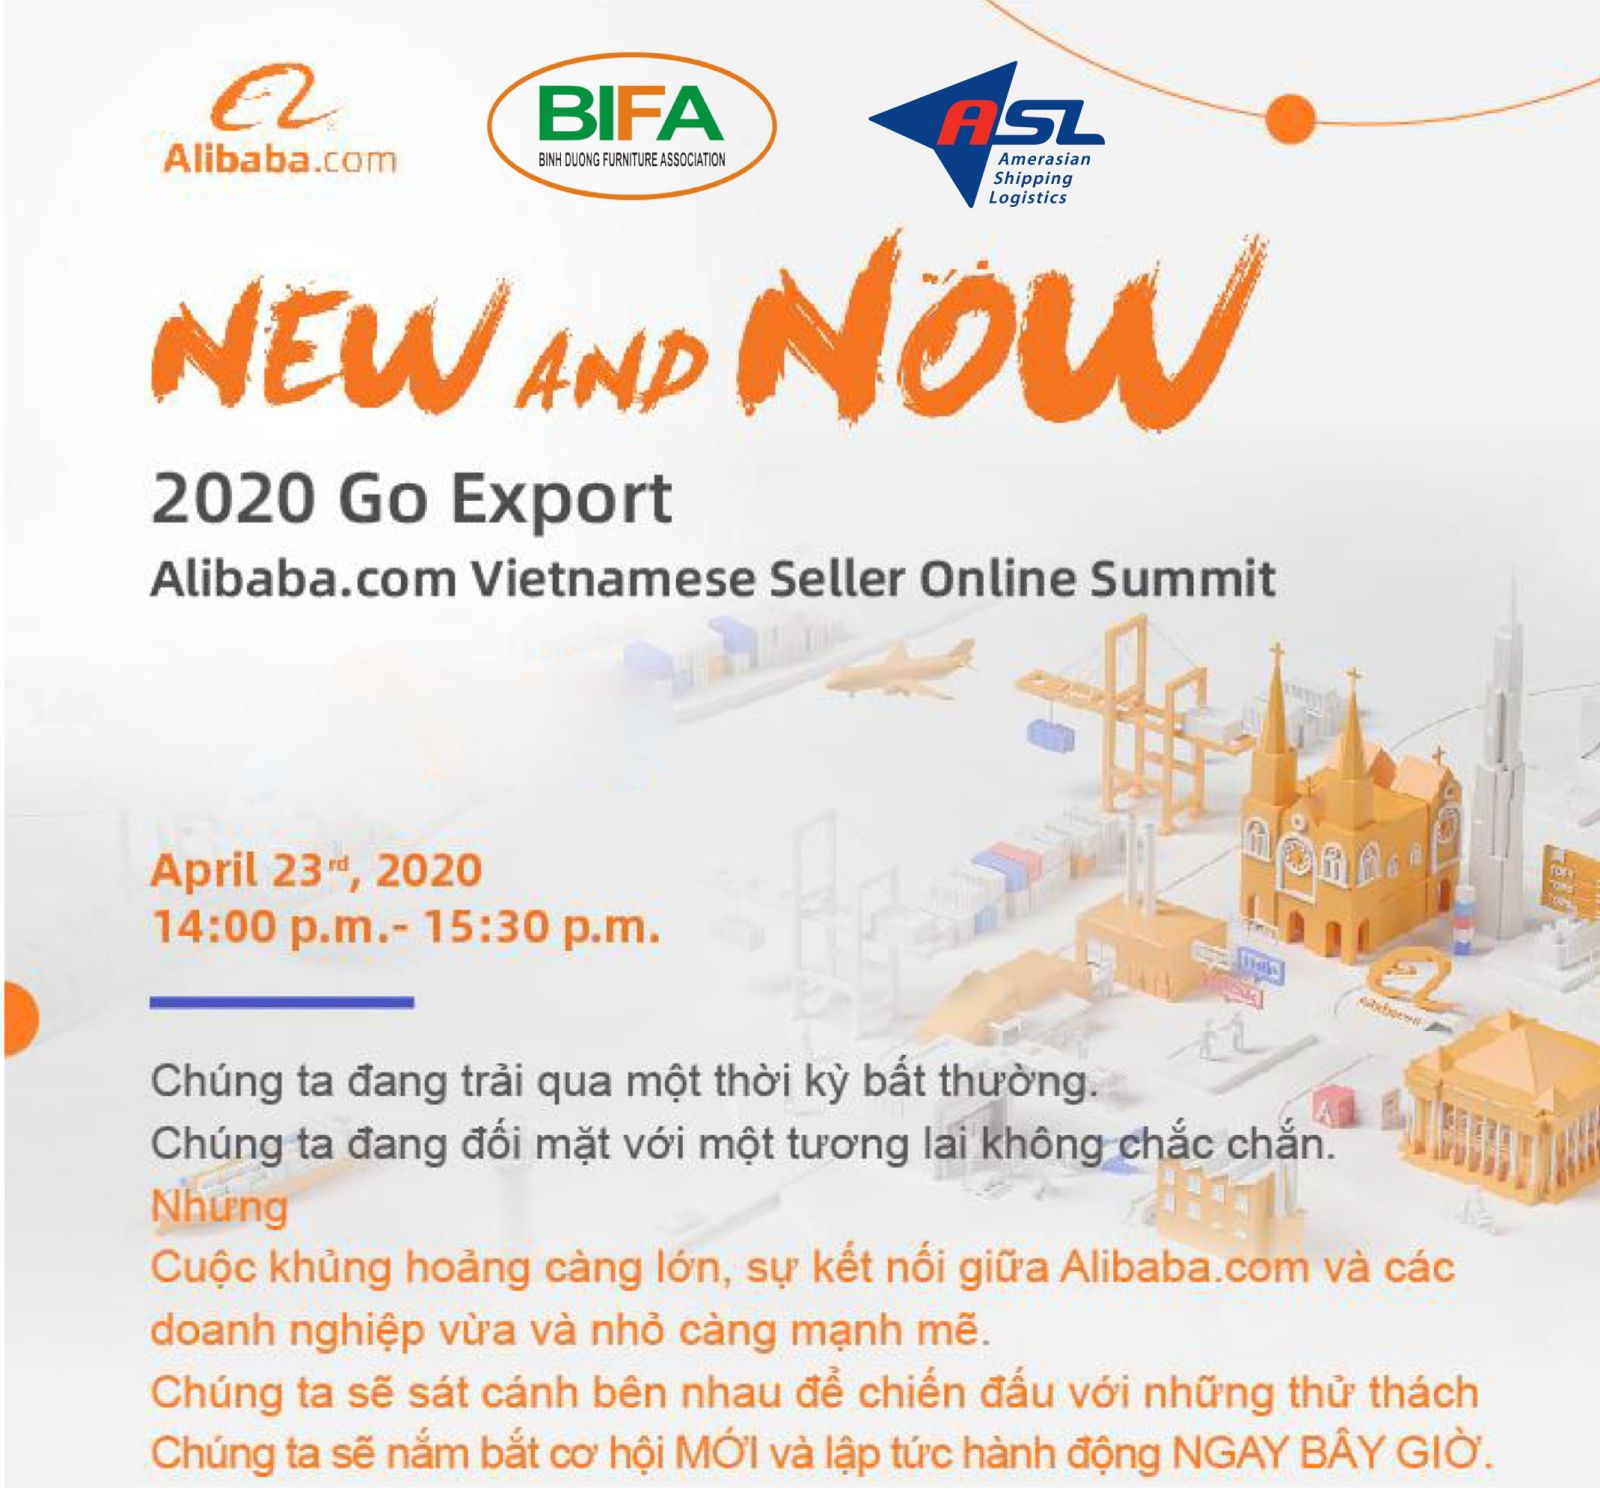 Hội nghị: CƠ HỘI MỚI CHO SỰ TĂNG TRƯỞNG MỚI” - “NEW AND NOW" - Go Export 2020